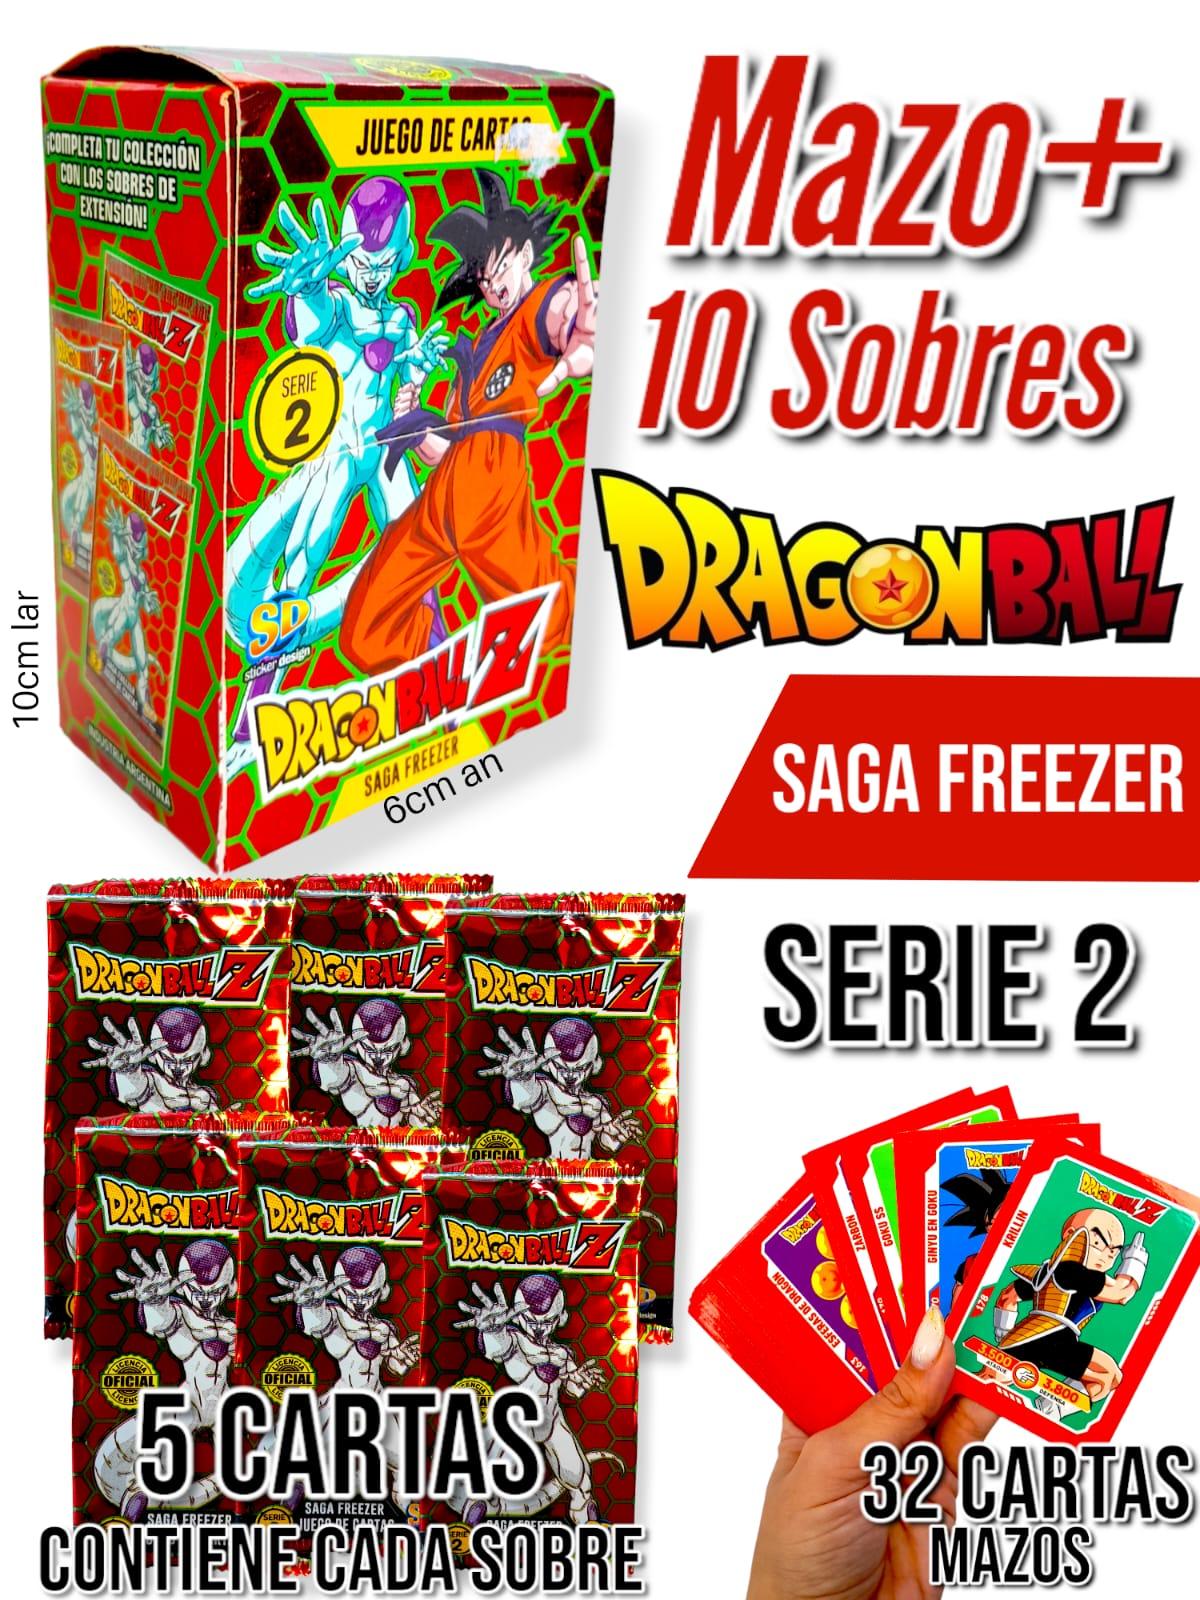 COMBO Mazo+ 10 Sobres Dragon Ball Z Saga Freezer Serie 2 